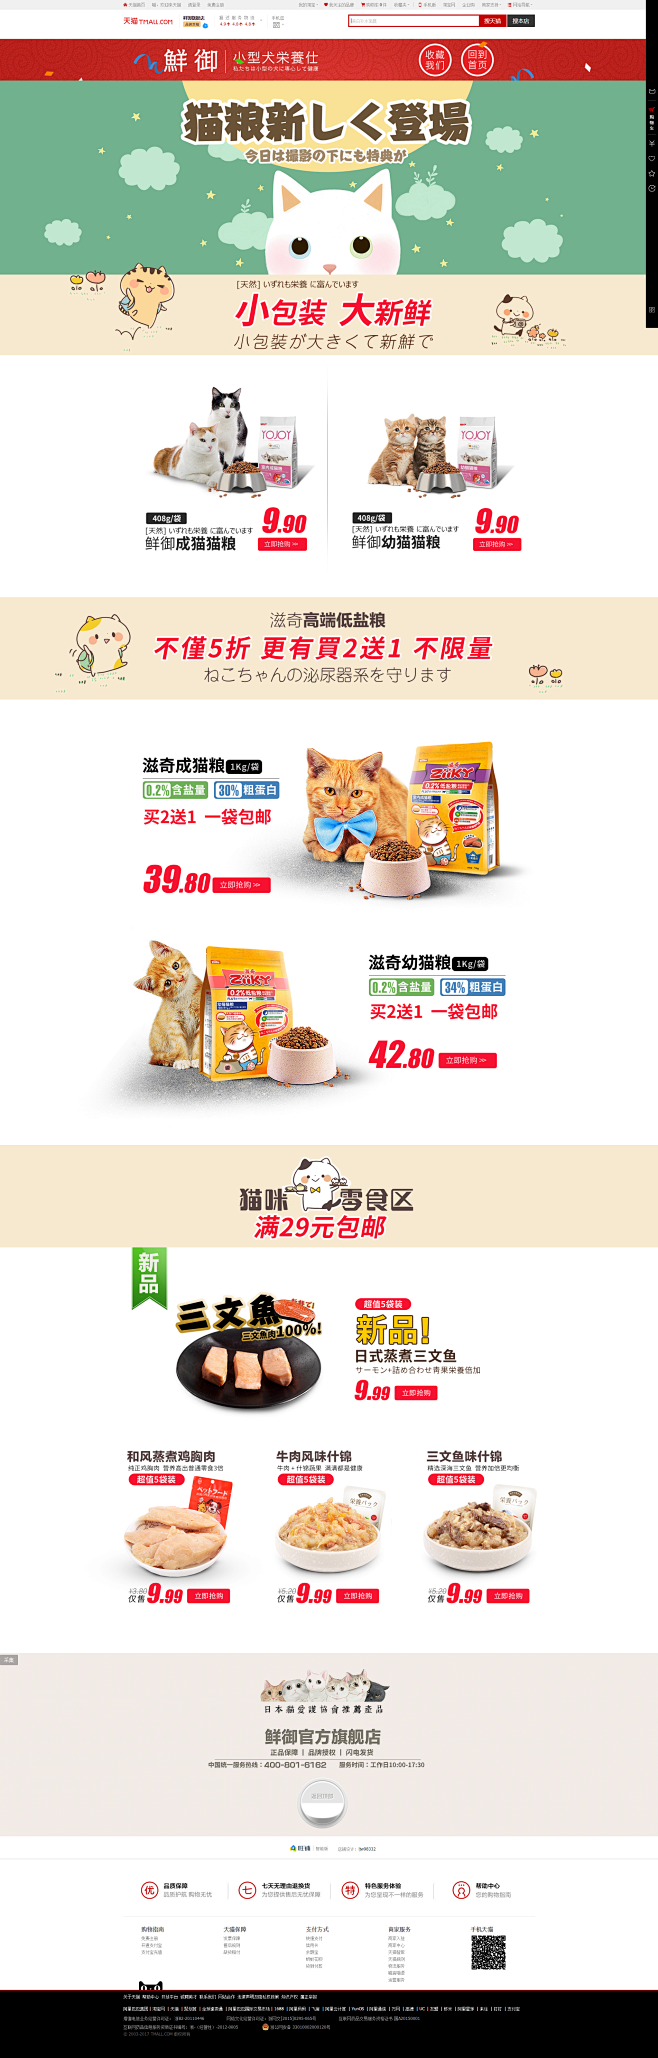 猫粮-鲜御旗舰店-天猫Tmall.com